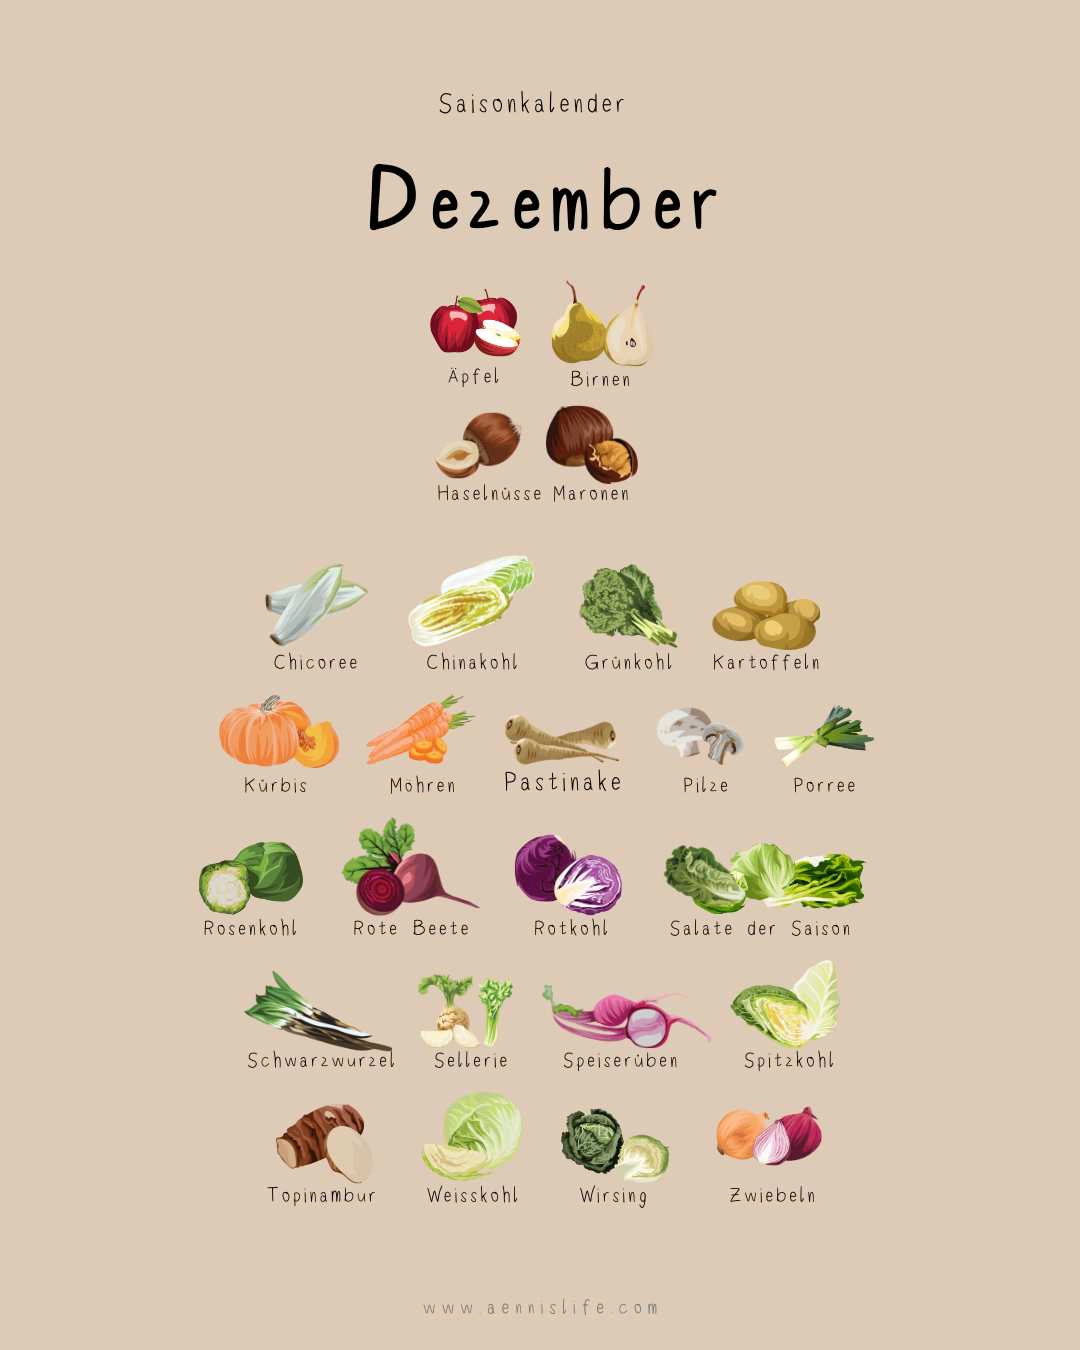 Saisonkalender Dezember, bei dem die Obst und Gemüse mit Bild und Text abgebildet sind.